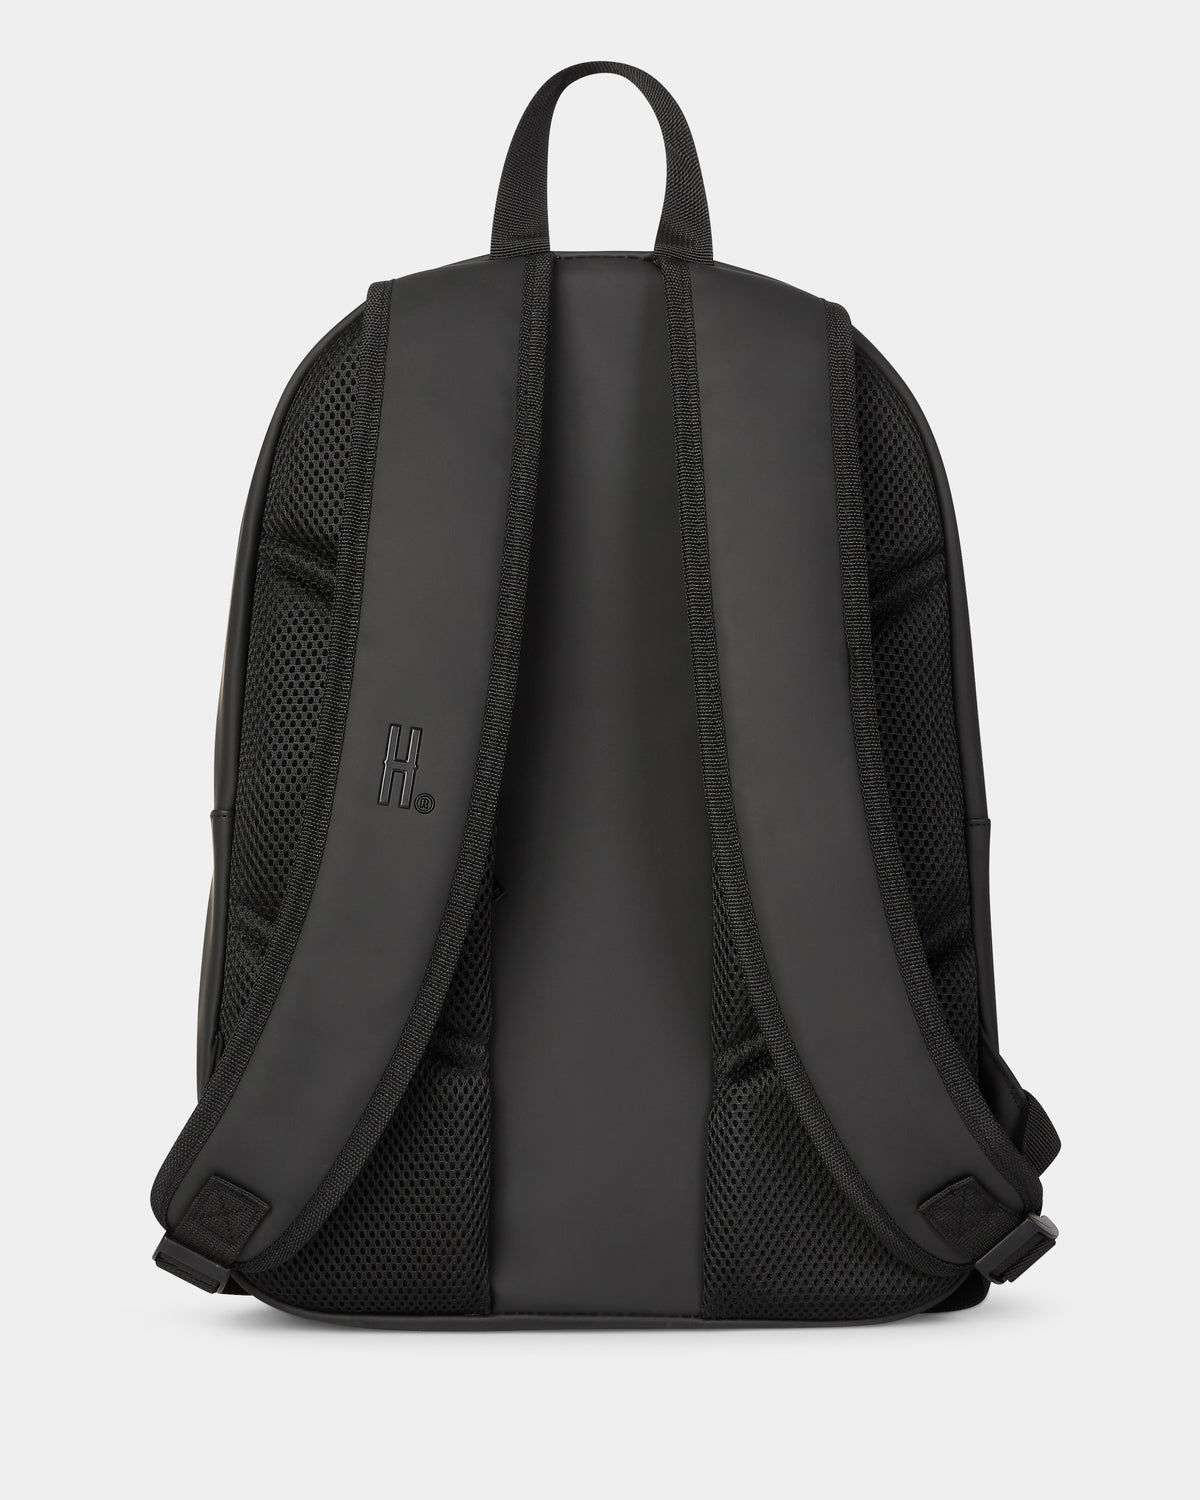 OG Chromatic Backpack - Black